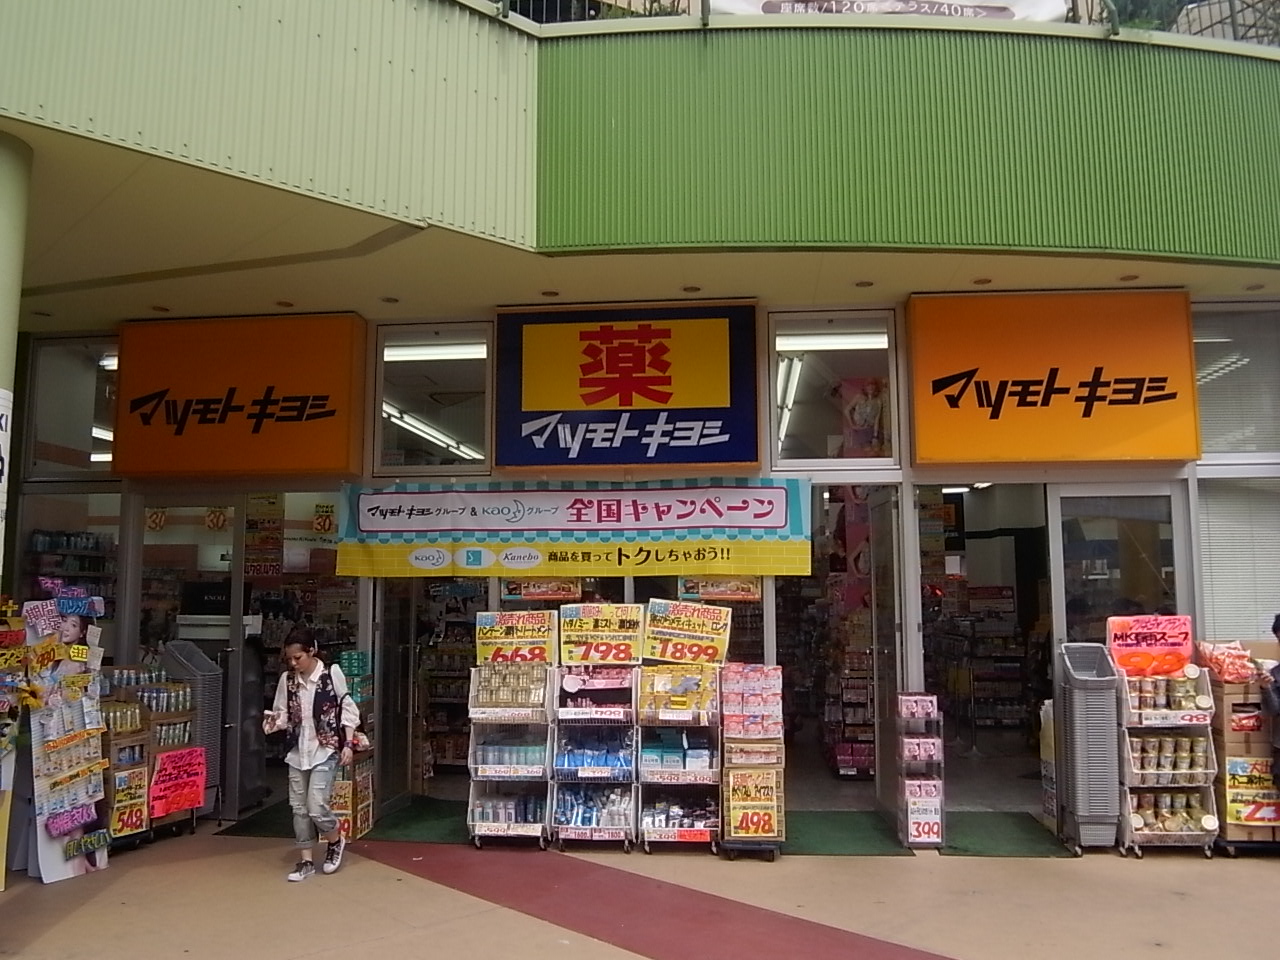 Dorakkusutoa. Matsumotokiyoshi Arsenal Jinshan shop 572m until (drugstore)